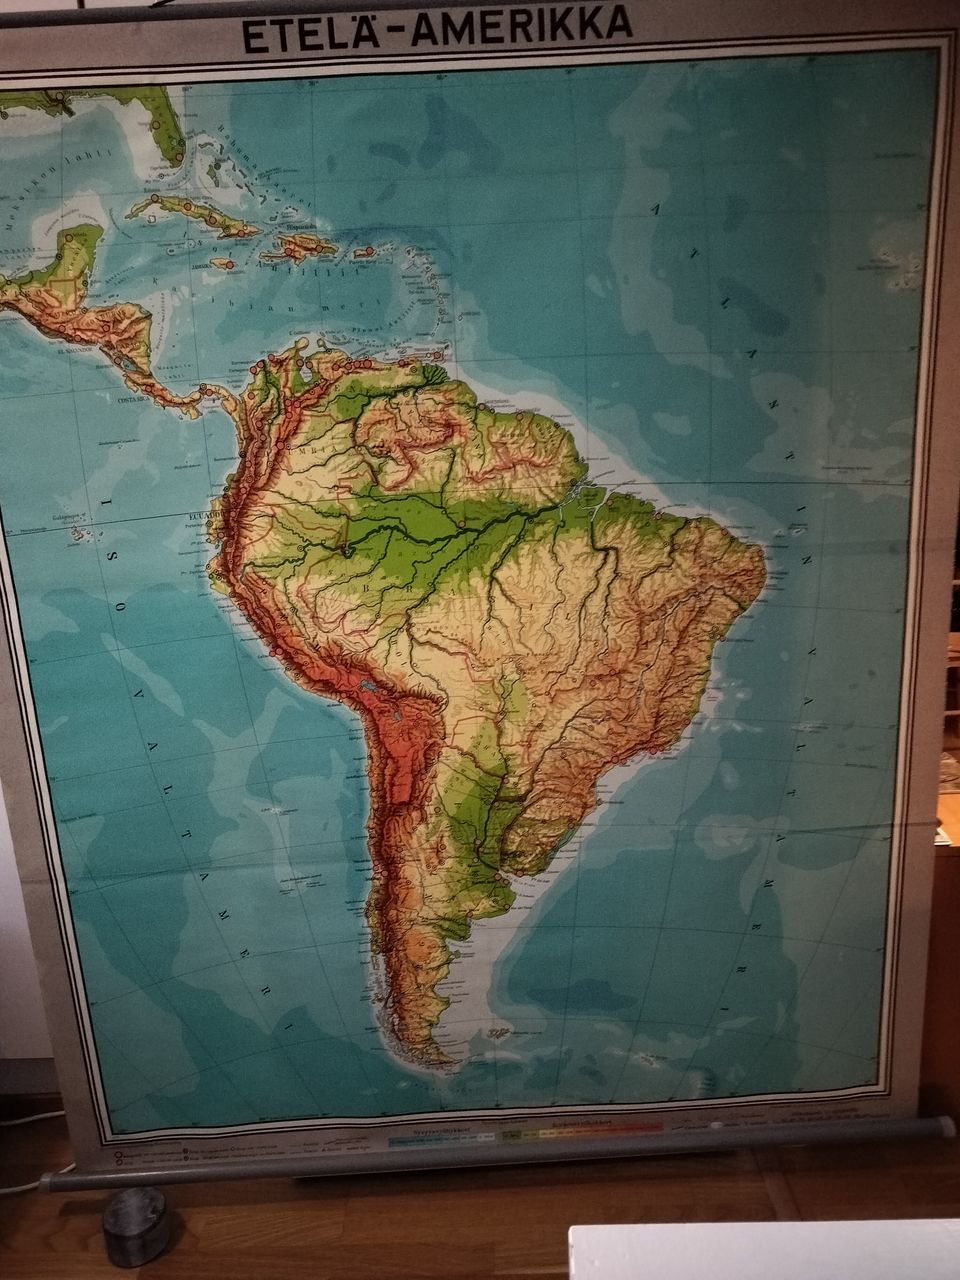 Etelä-Amerikan kartta lev 150 cm kork 180 cm